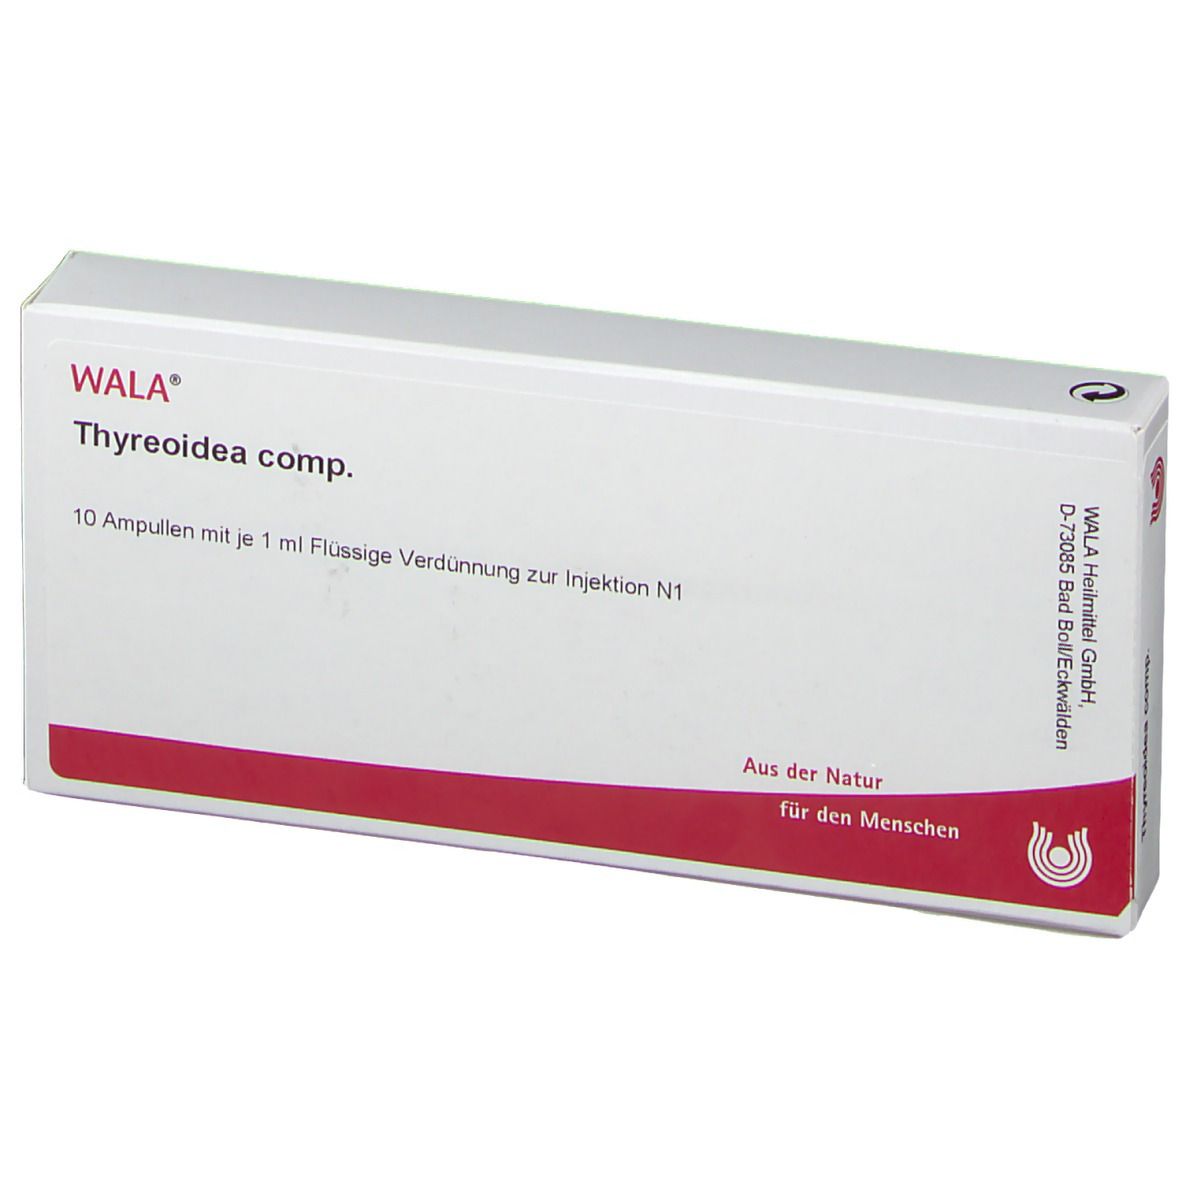 WALA® Thyreoidea Comp. Ampullen